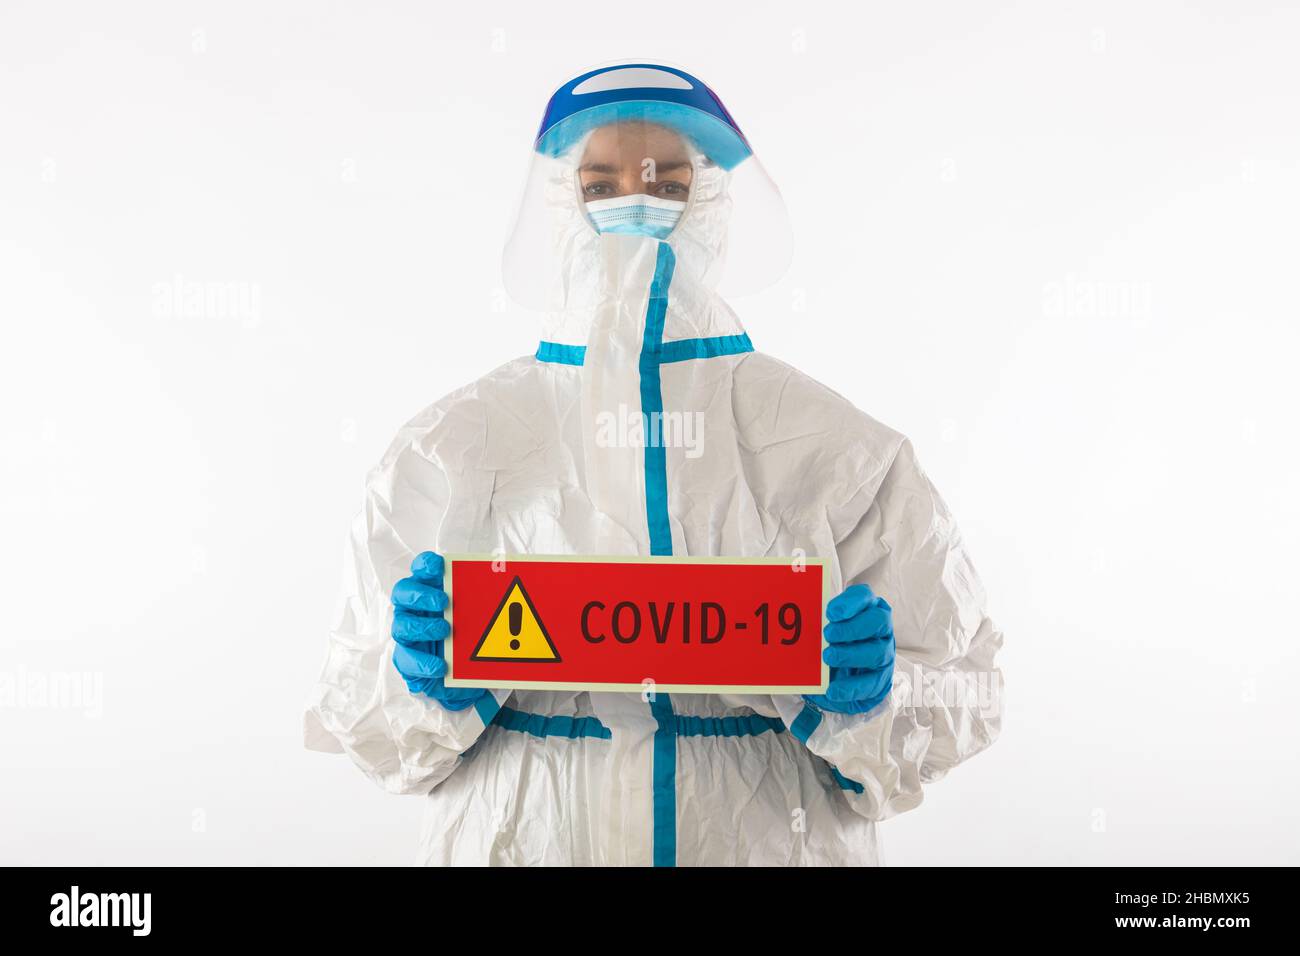 Médico enfermero con un equipo de protección Personal y guantes de látex con un cartel rojo que dice: 'COVID-19'.Coronavirus, pandemia y concepto de Banque D'Images